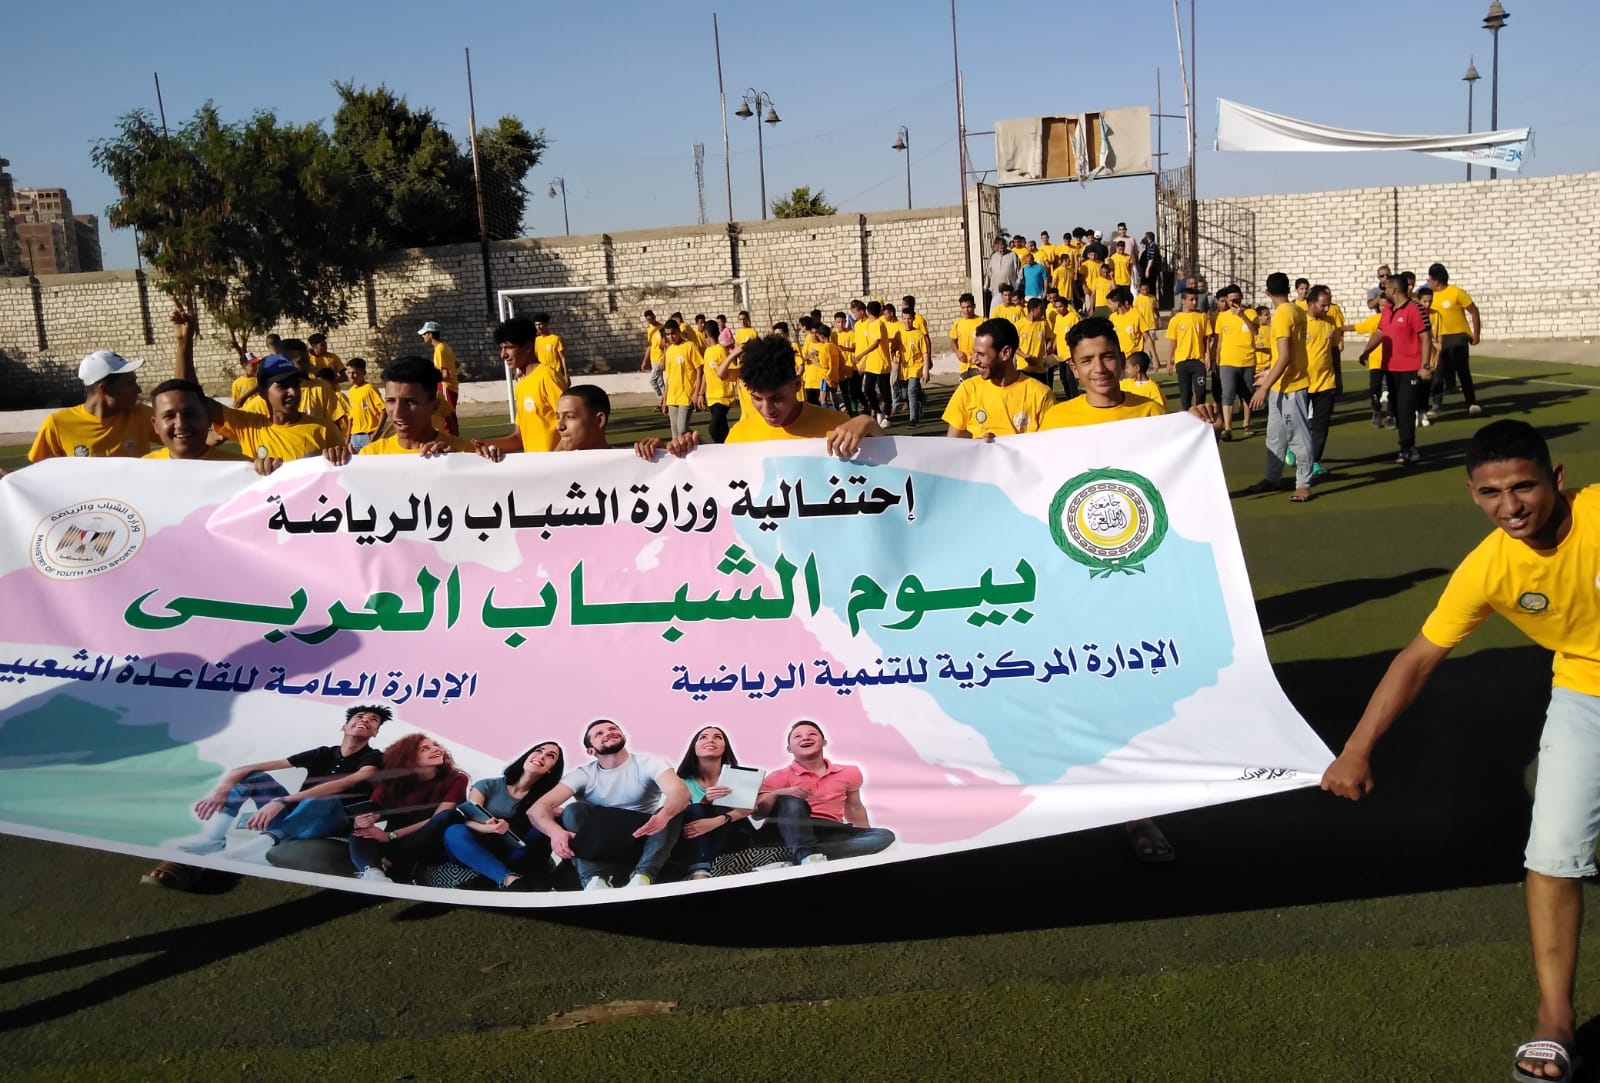  ماراثون رياضي ضمن فعاليات احتفال يوم الشباب العربي (4)